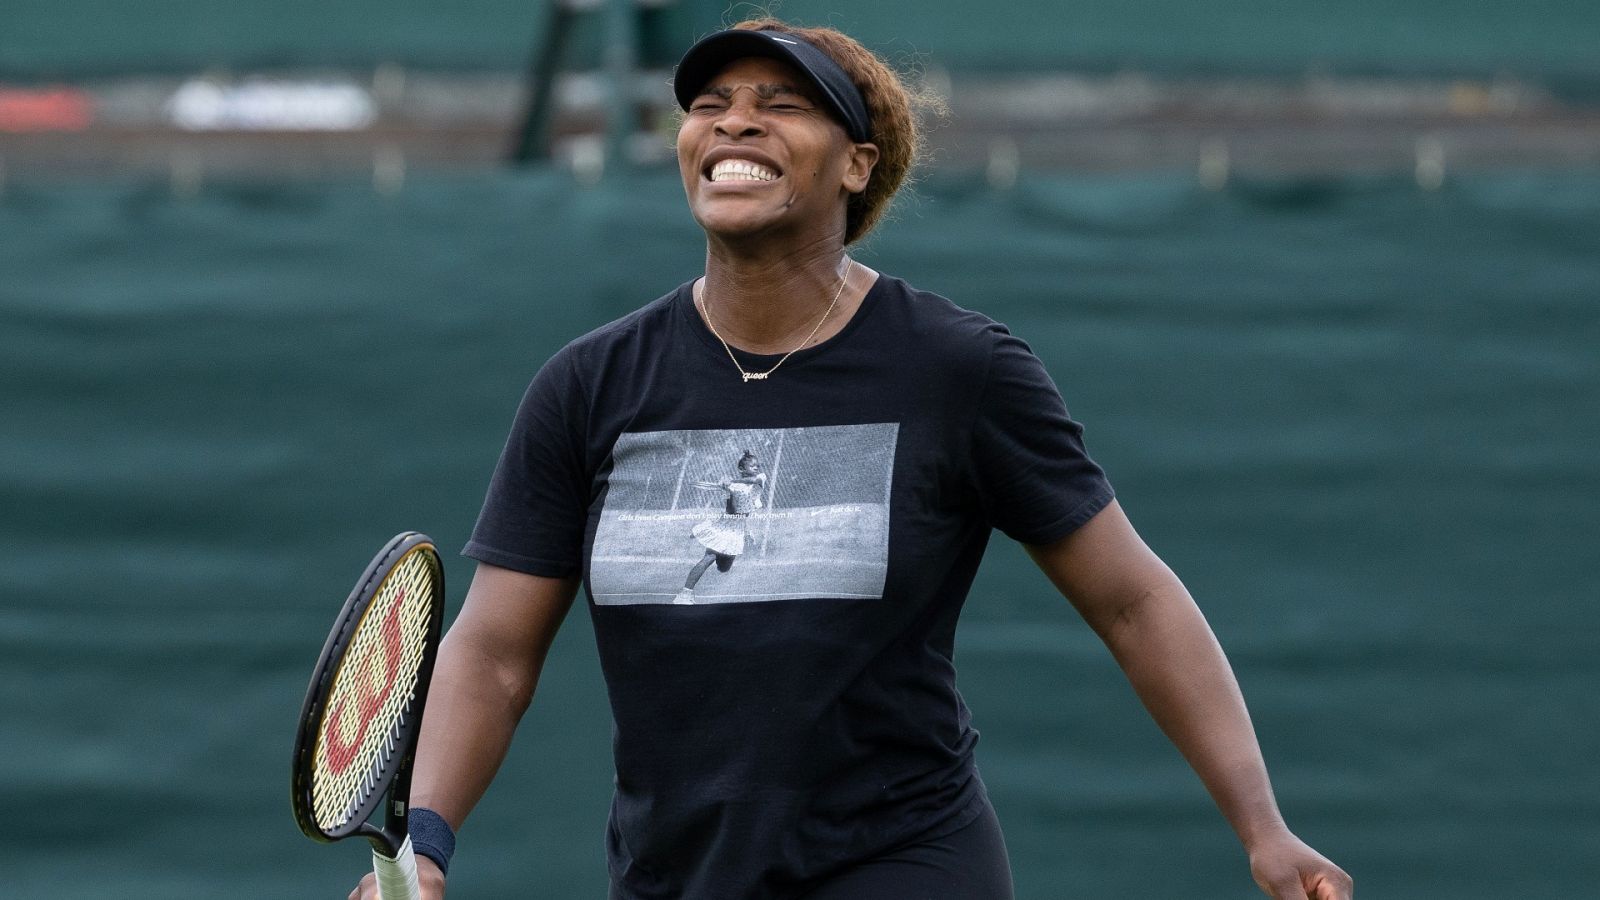  La tenista estadounidense, Serena Williams